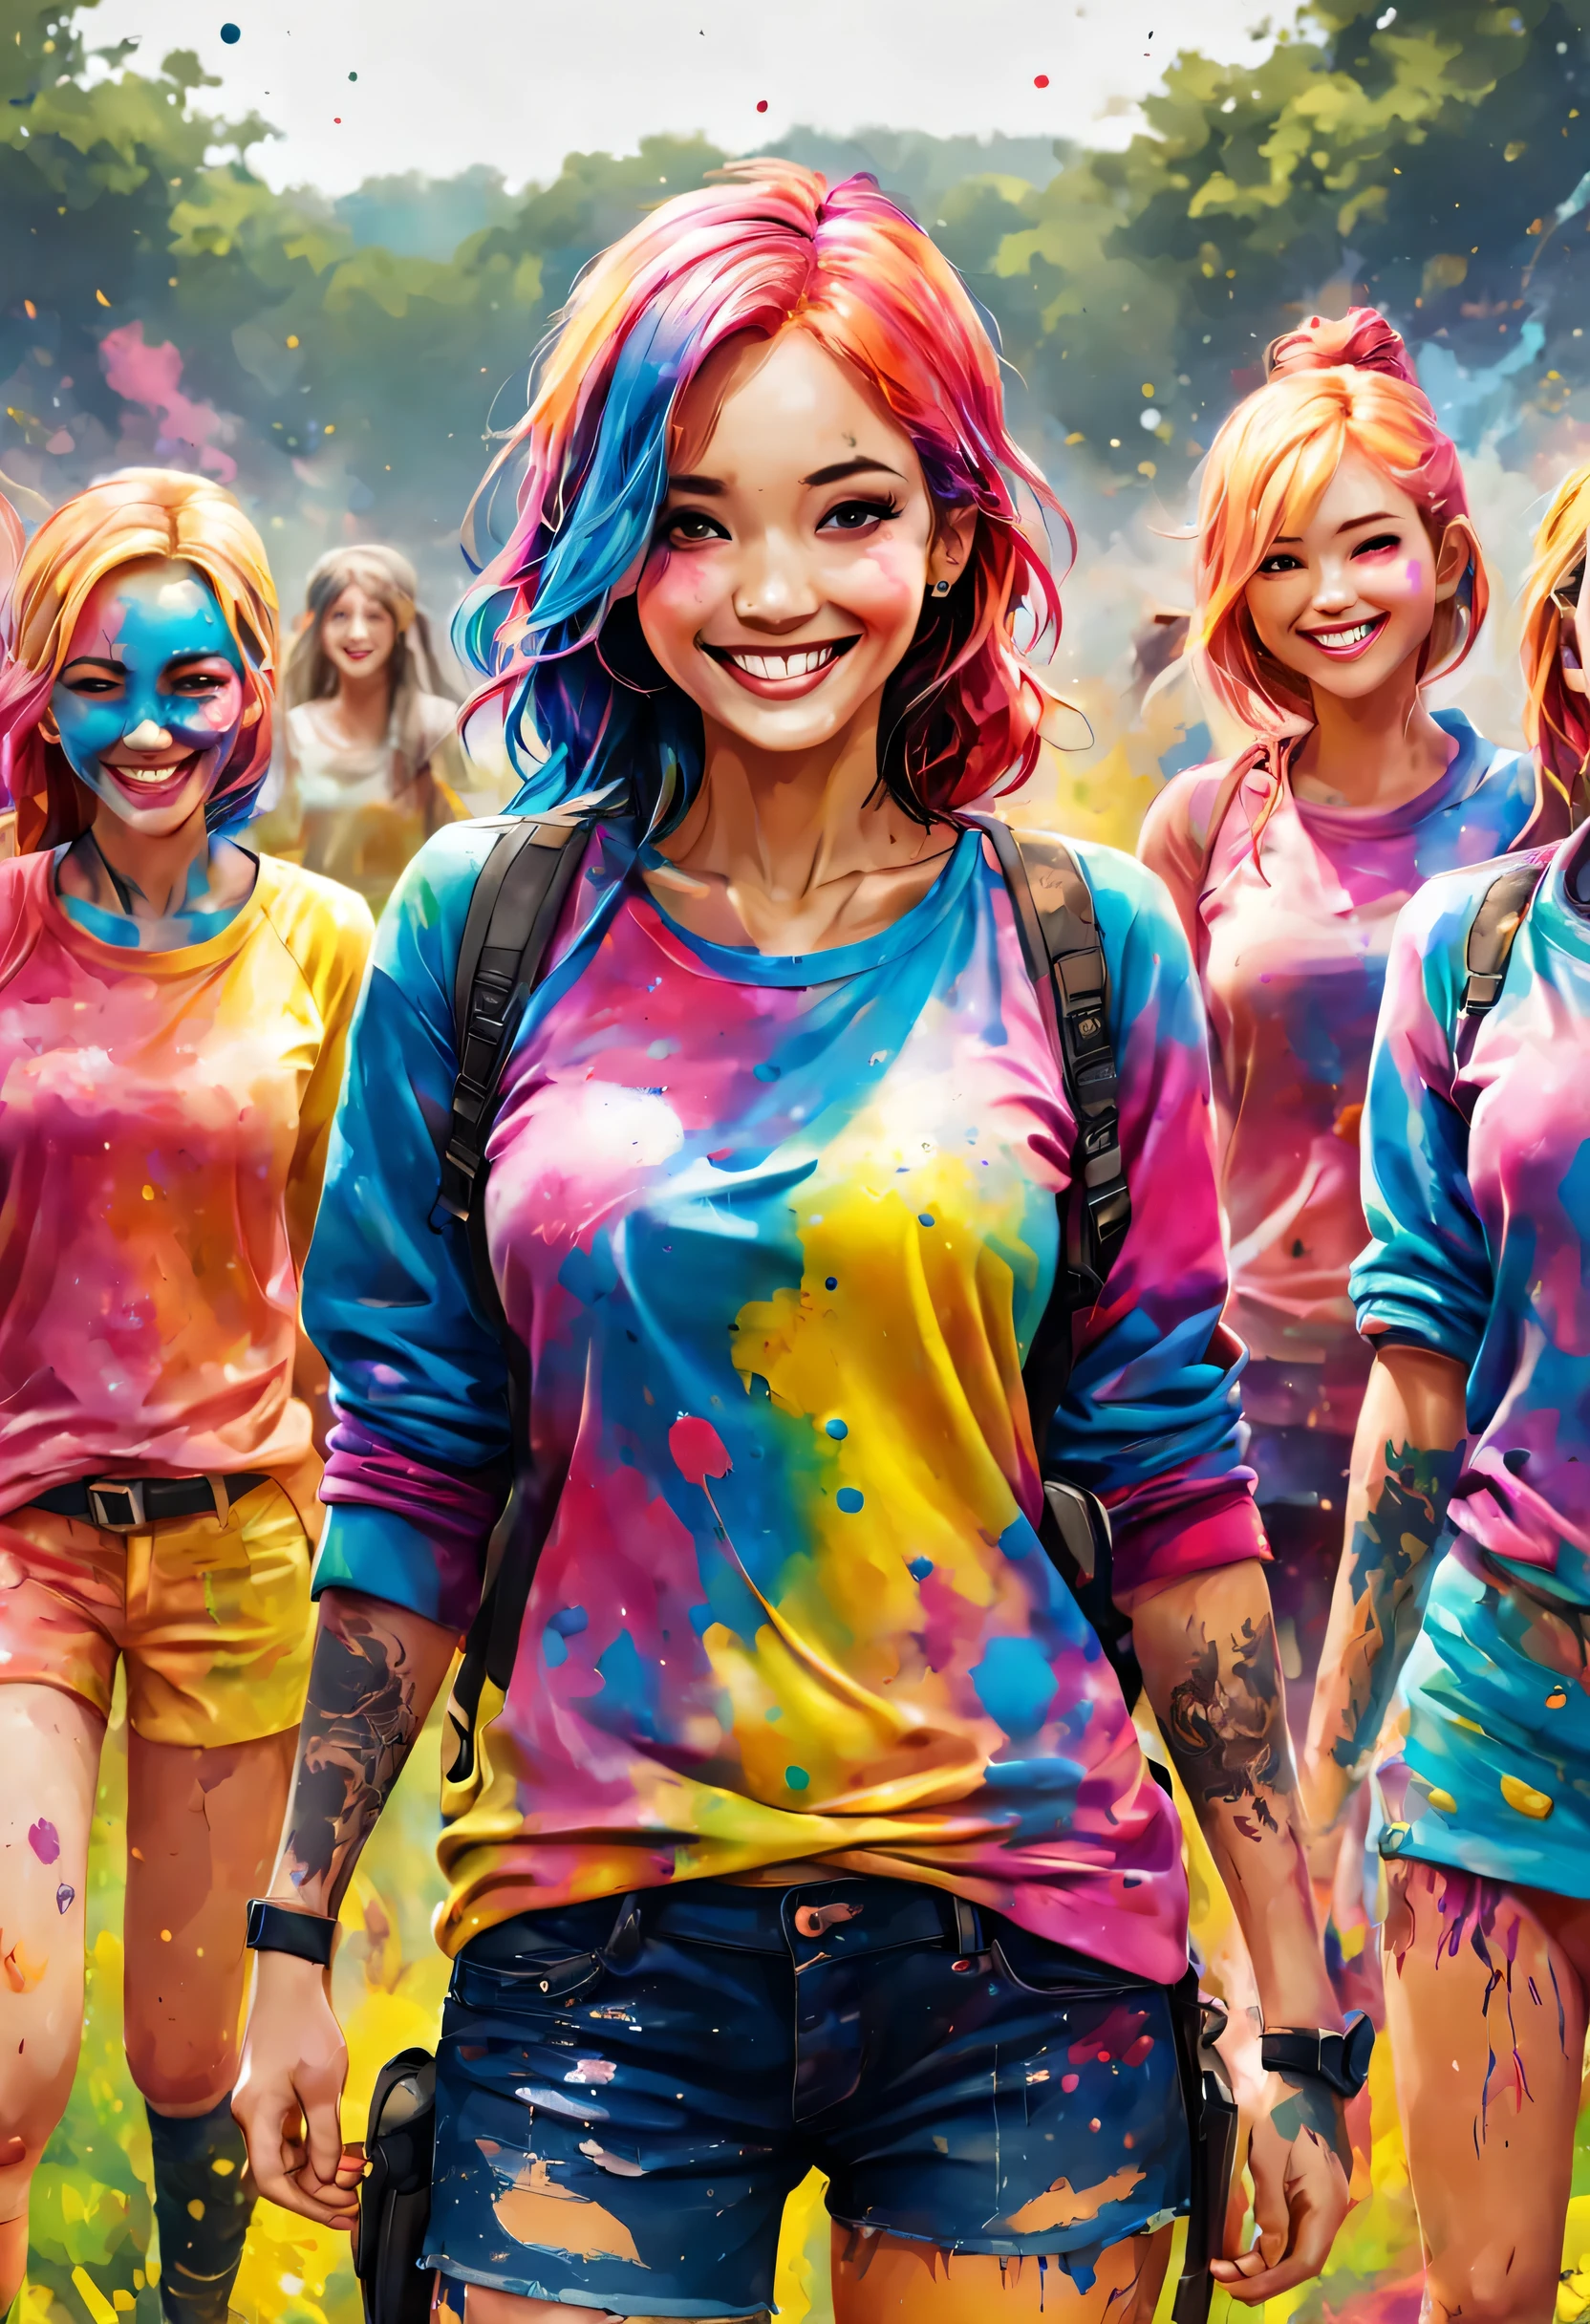 インクの飛沫, (体中にタトゥーを入れた女の子たち), カジュアルな服装, (カラフルなインク), 笑顔, サバイバルゲーム分野では